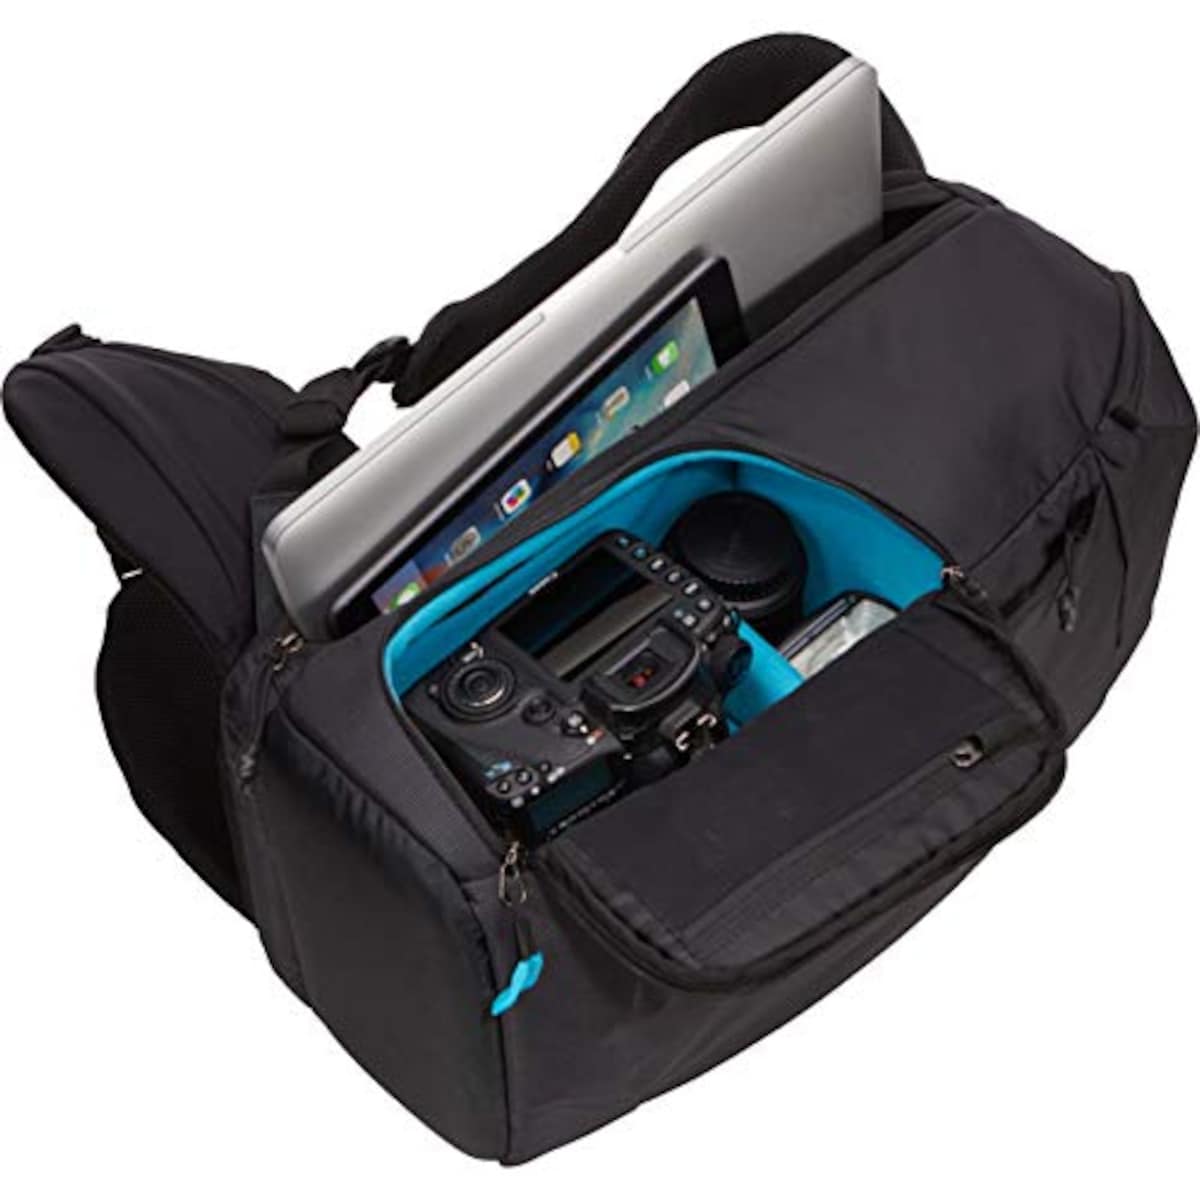  [スーリー]リュック Thule Aspect DSLR Backpack デジタル一眼レフカメラ収納用 TAC106 Black画像3 